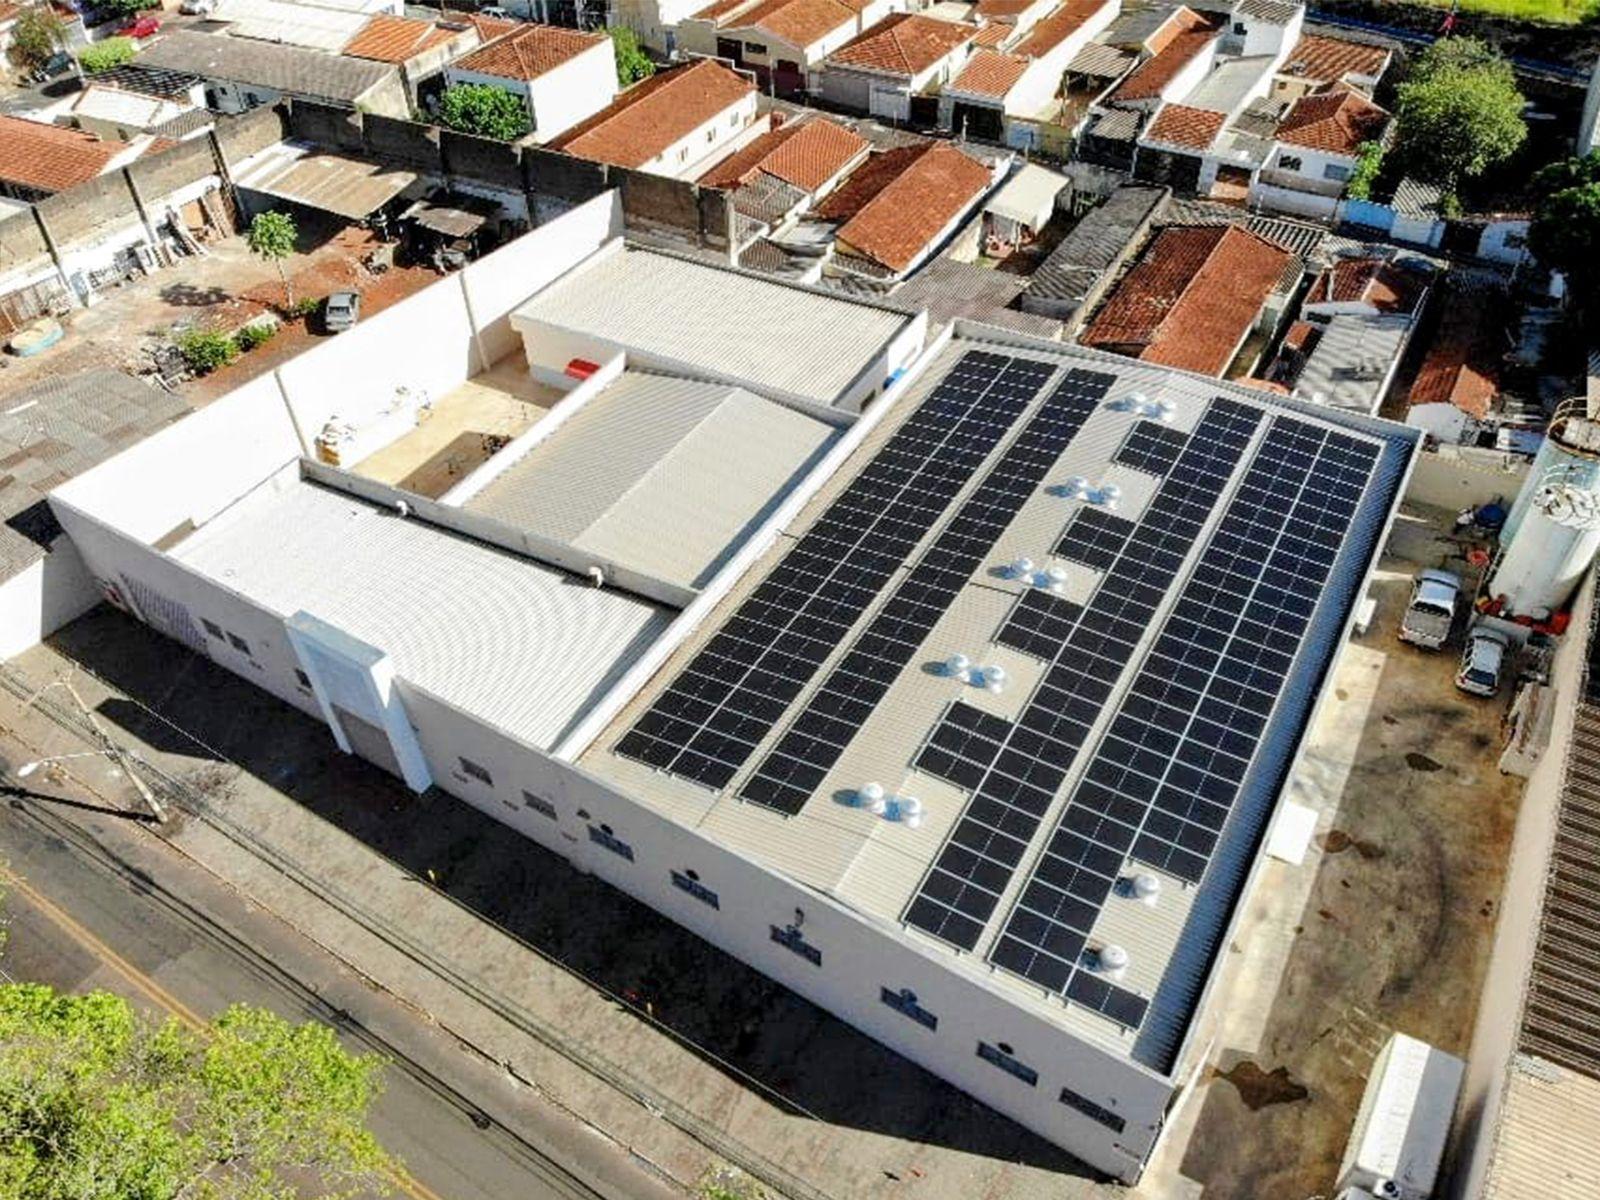 170 FV panelů instalovaných na střeše zvyšuje celkovou velikost systému na 90,1 kW v Ribeirão Preto-SP, Brazílie (1)